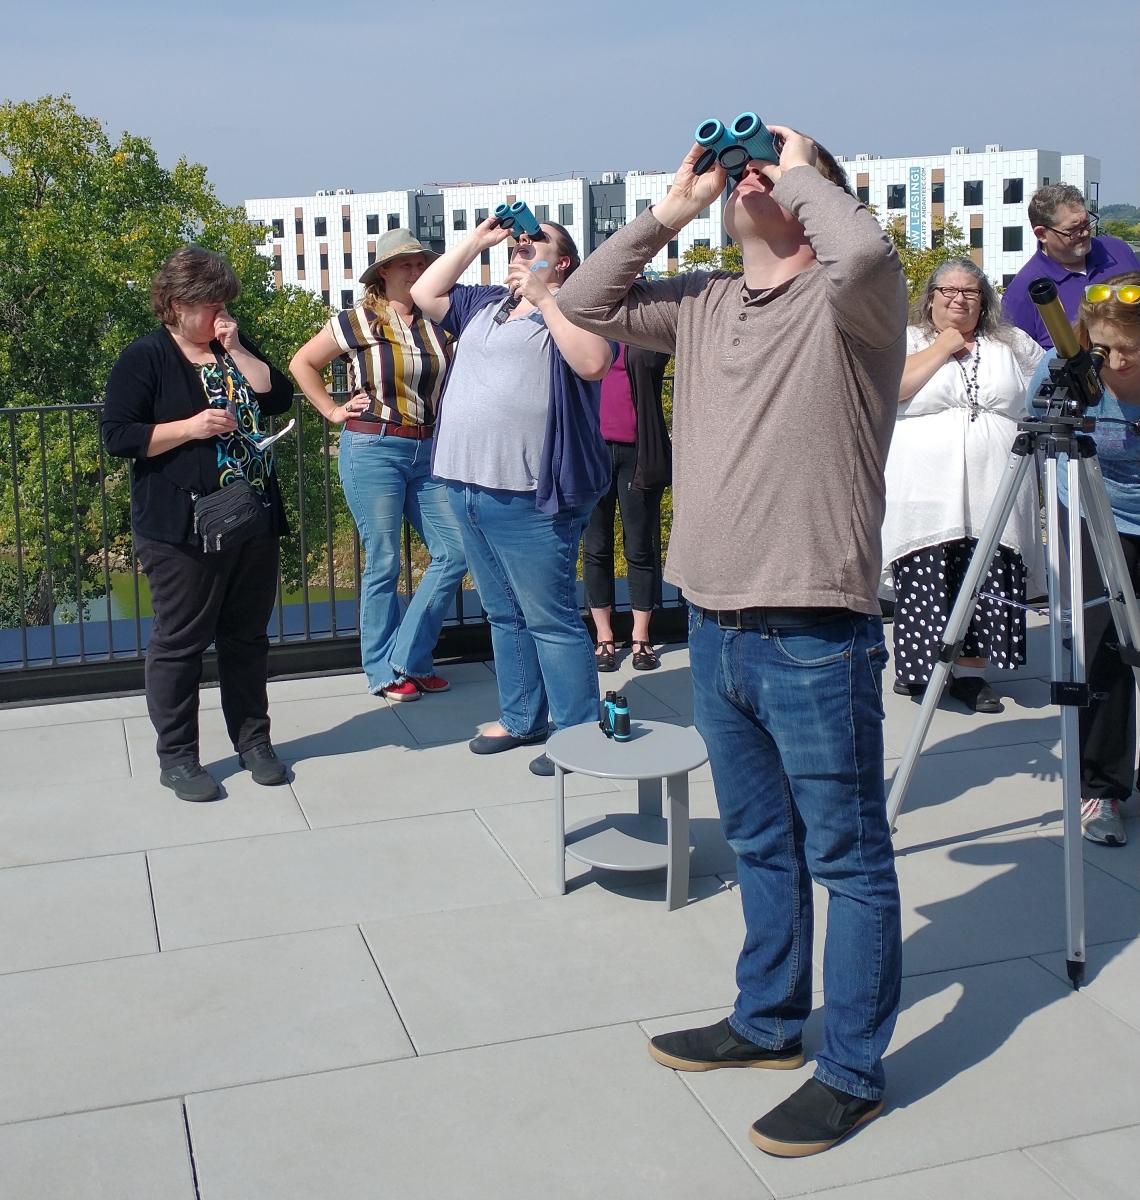 SEAL workshop attendees looking through binoculars